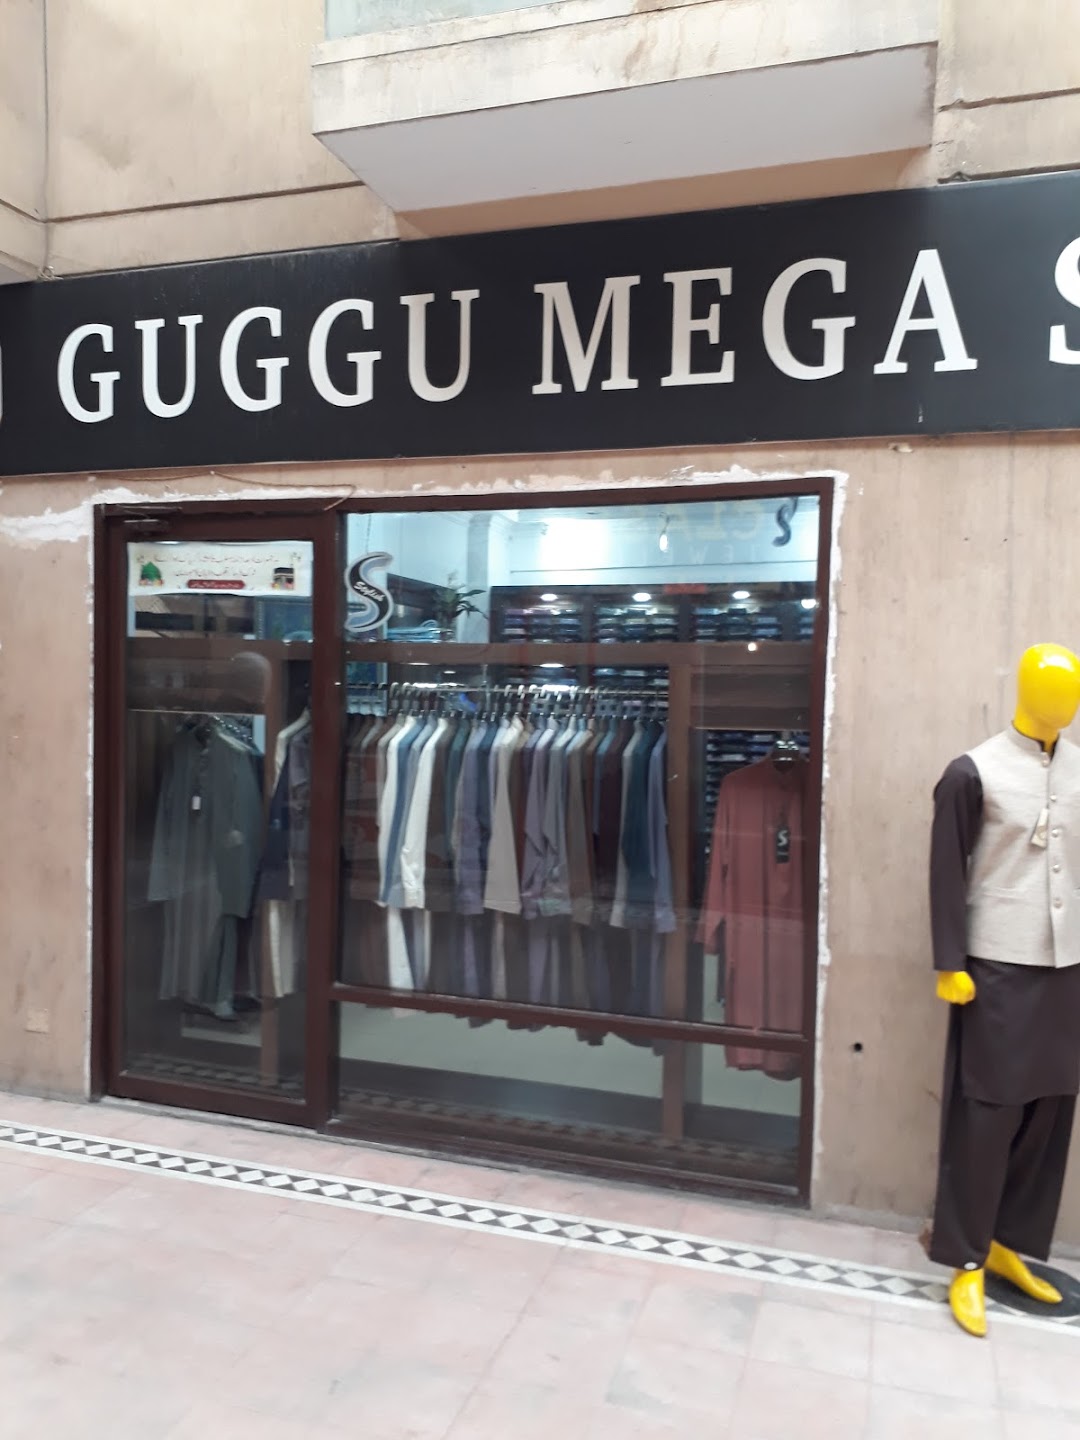 Guggu mega store